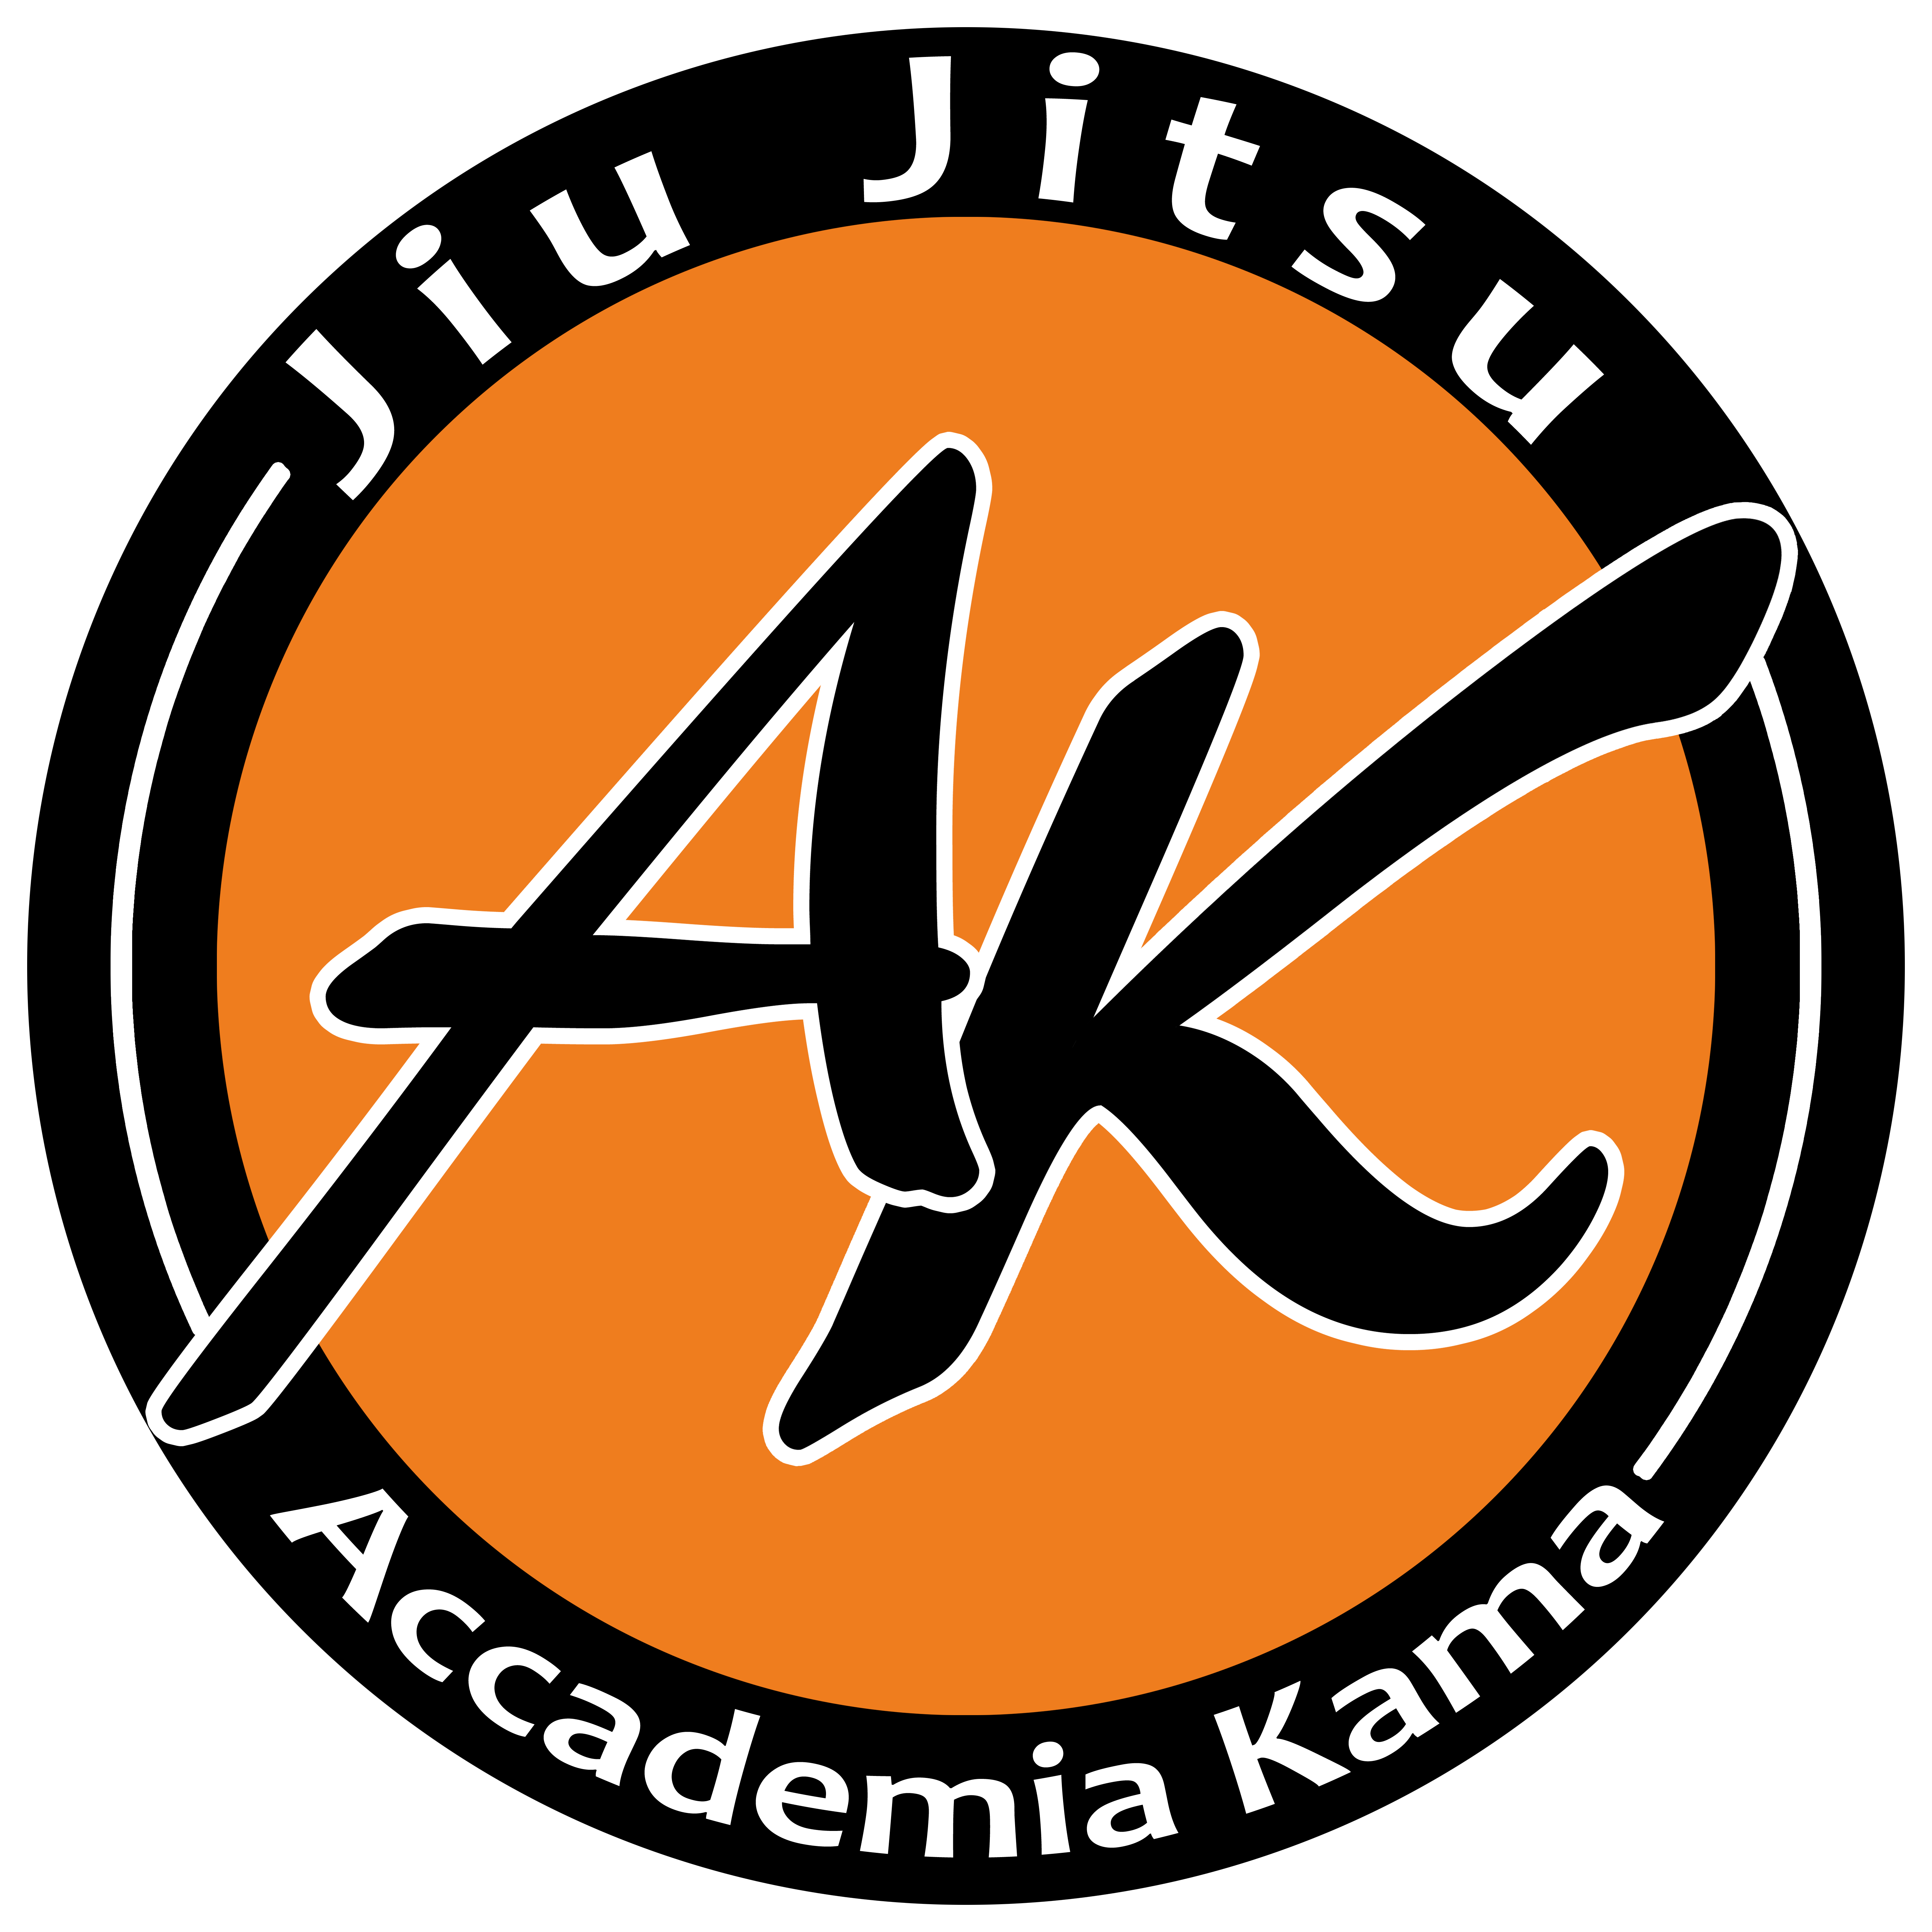 Accademia Kama